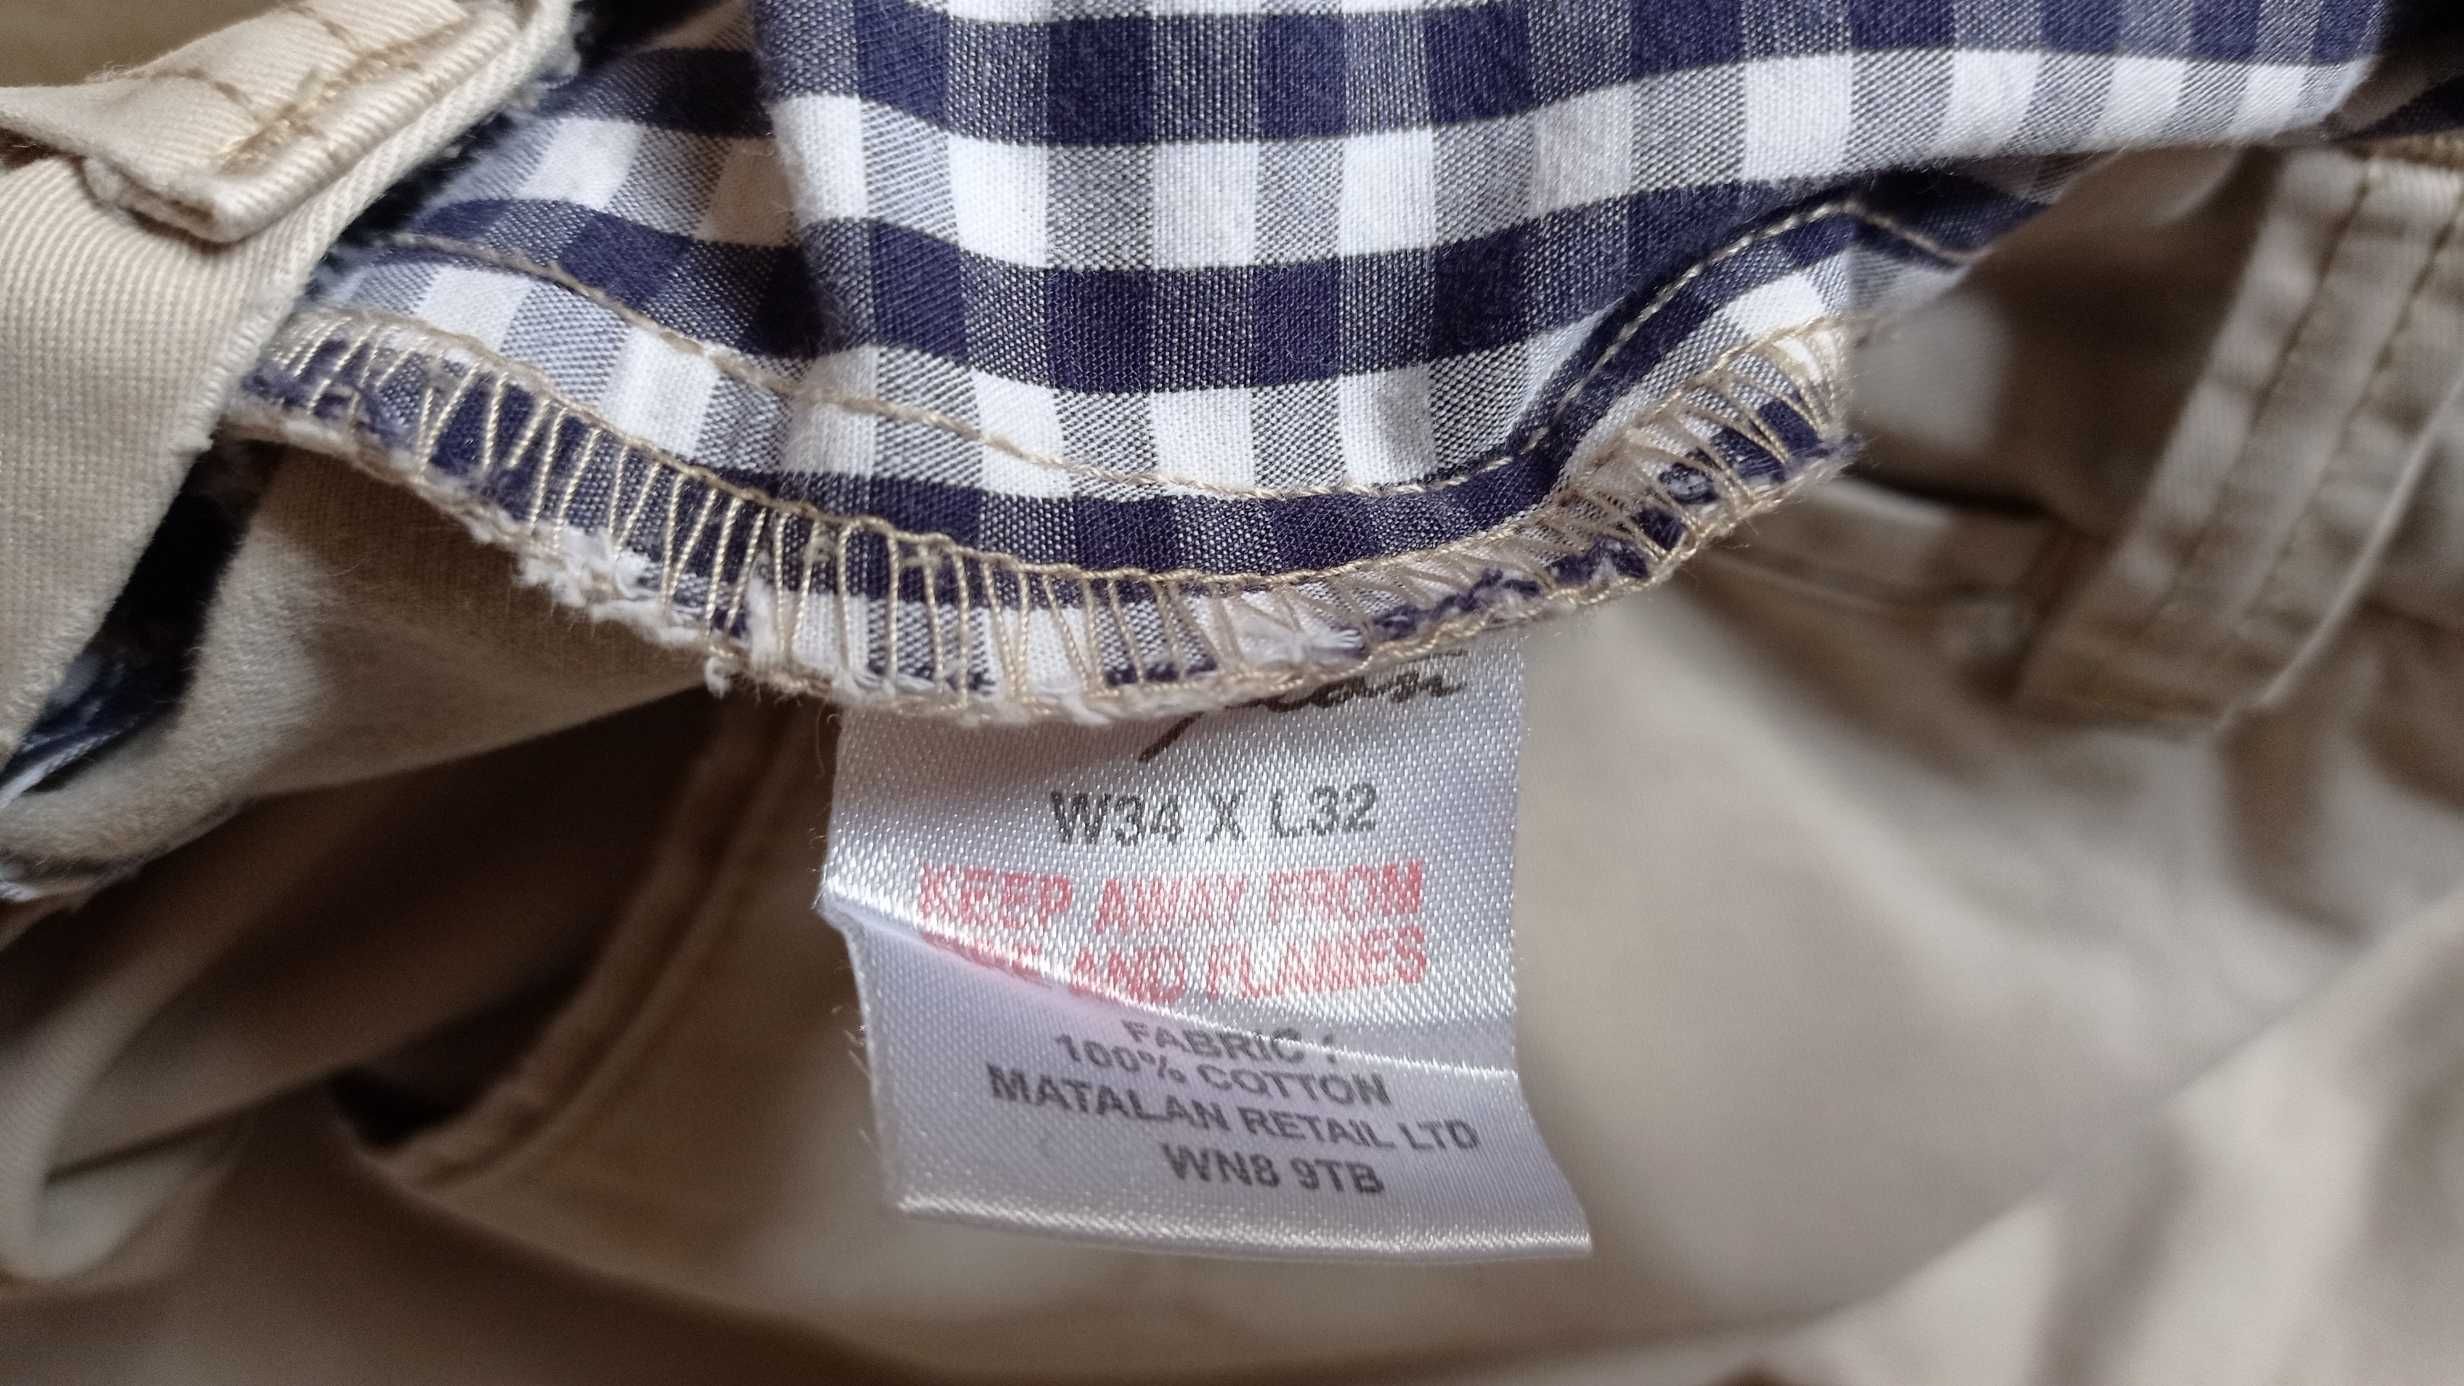 Spodnie męskie chinosy firmy HAMPTON REPUBLIC -pas 90cm. -60 zł